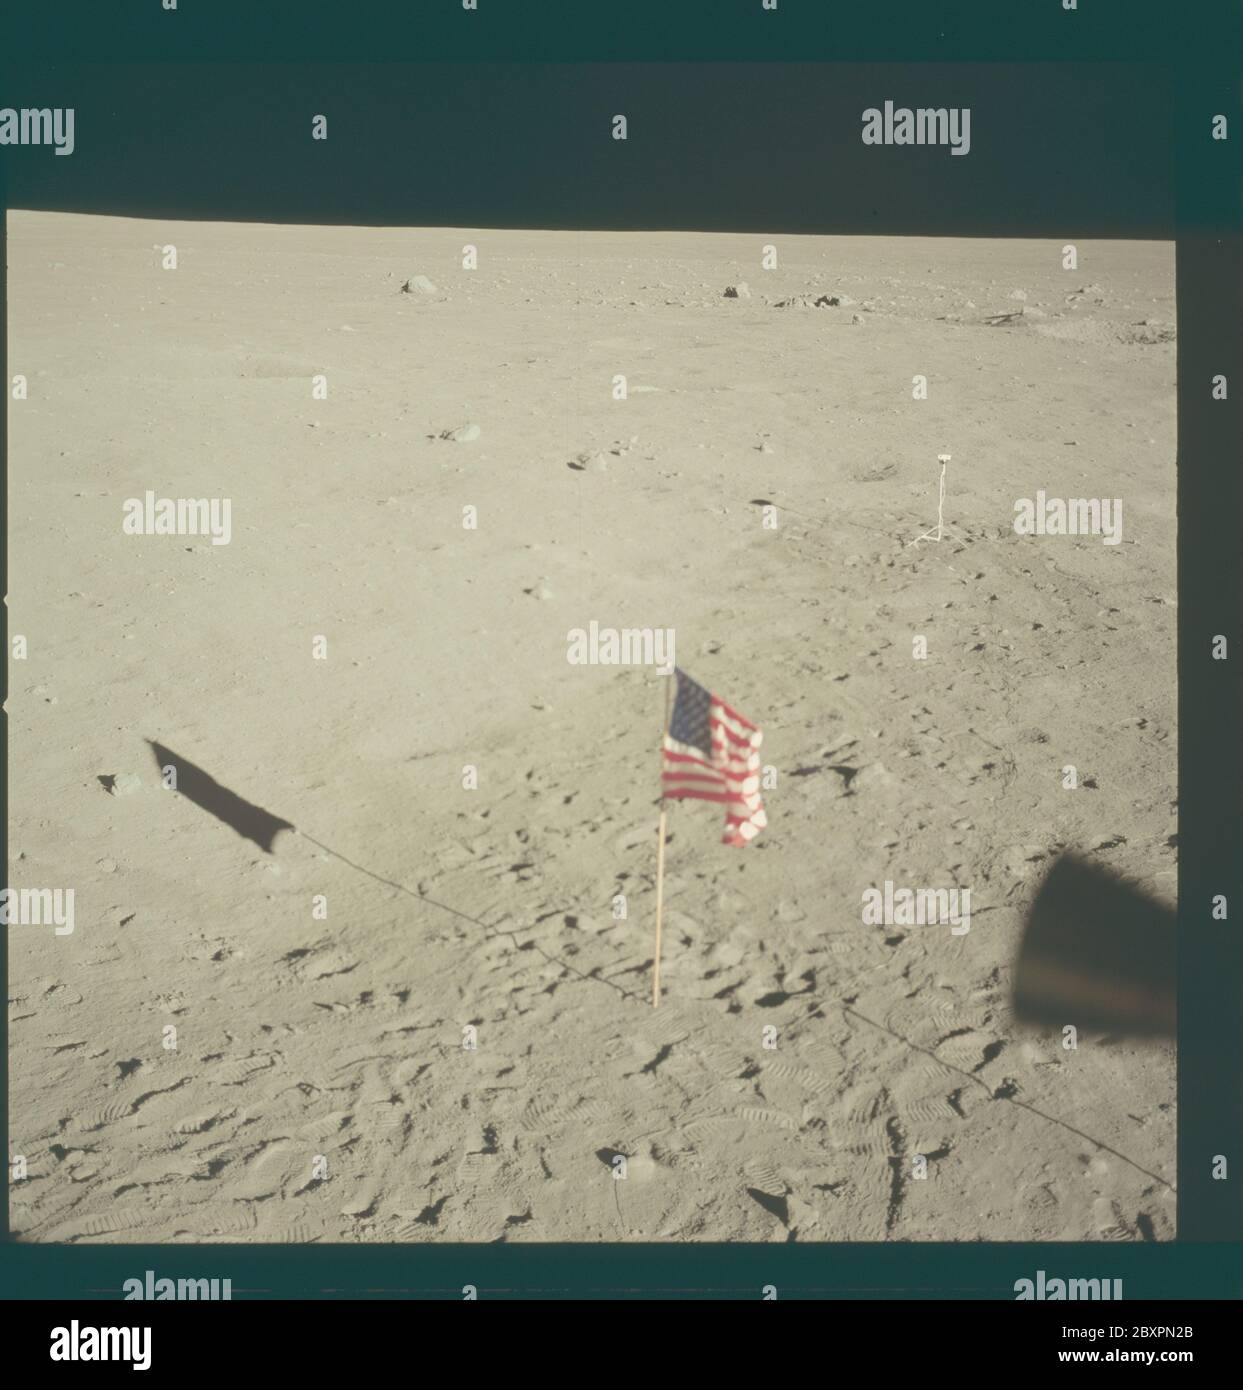 AS11-37-5553 - Apollo 11 - immagine missione Apollo 11 - orizzonte lunare dalla base di tranquillità; ambito e contenuto: Il database originale descrive questo come: Descrizione: Orizzonte lunare dalla base di tranquillità, il sito di atterraggio del modulo lunare (LM). Thruster LM visibili in primo piano. Bandiera degli Stati Uniti visibile sulla superficie lunare. Immagine tratta dall'interno della LM durante la missione Apollo 11. Il film originale è stato etichettato R. Film Type: EKTACHROME EF SO 168 Color su base in poliestere Estar da 2.5 mil, preso con una lente da 80 mm. Angolo solare basso. Inclinazione approssimativa: Media obliqua. Oggetto: Volo Apollo 11, Foto Stock